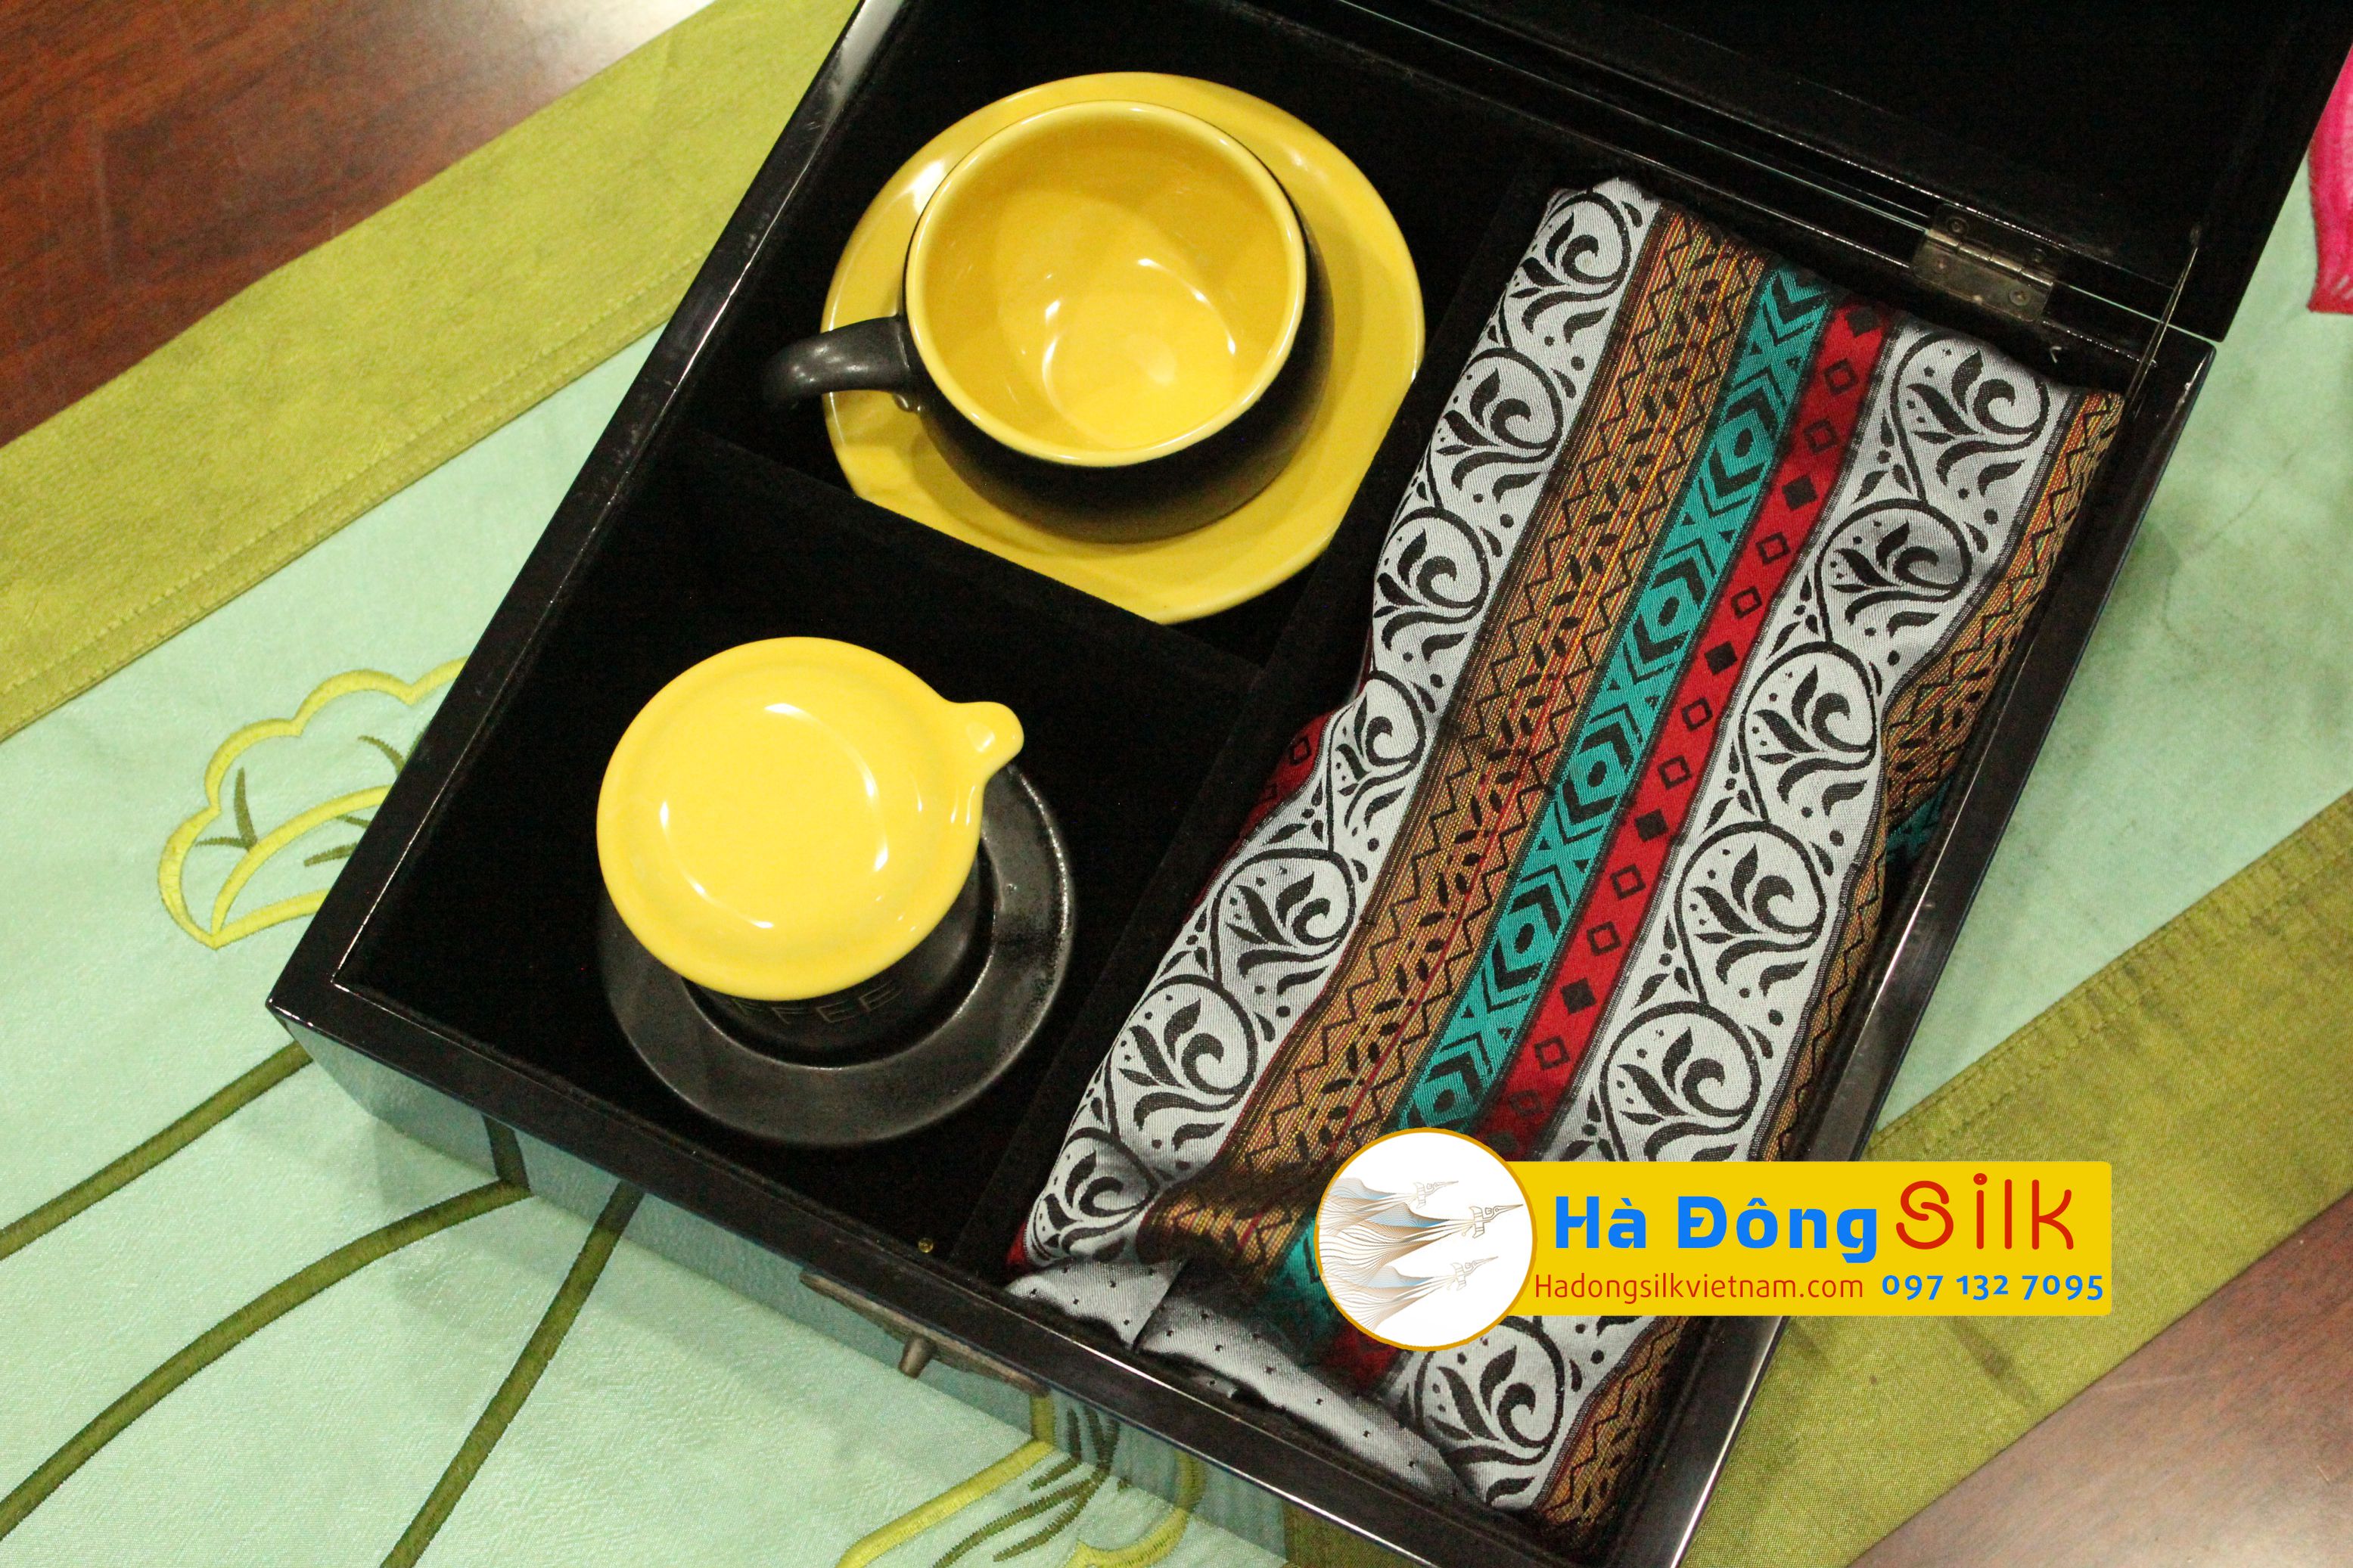 Quà tặng 8 tháng 3 ý nghĩa - Hộp sơn mài & phin cà phê gốm Bát Tràng & Khăn choàng Lụa Hà Đông